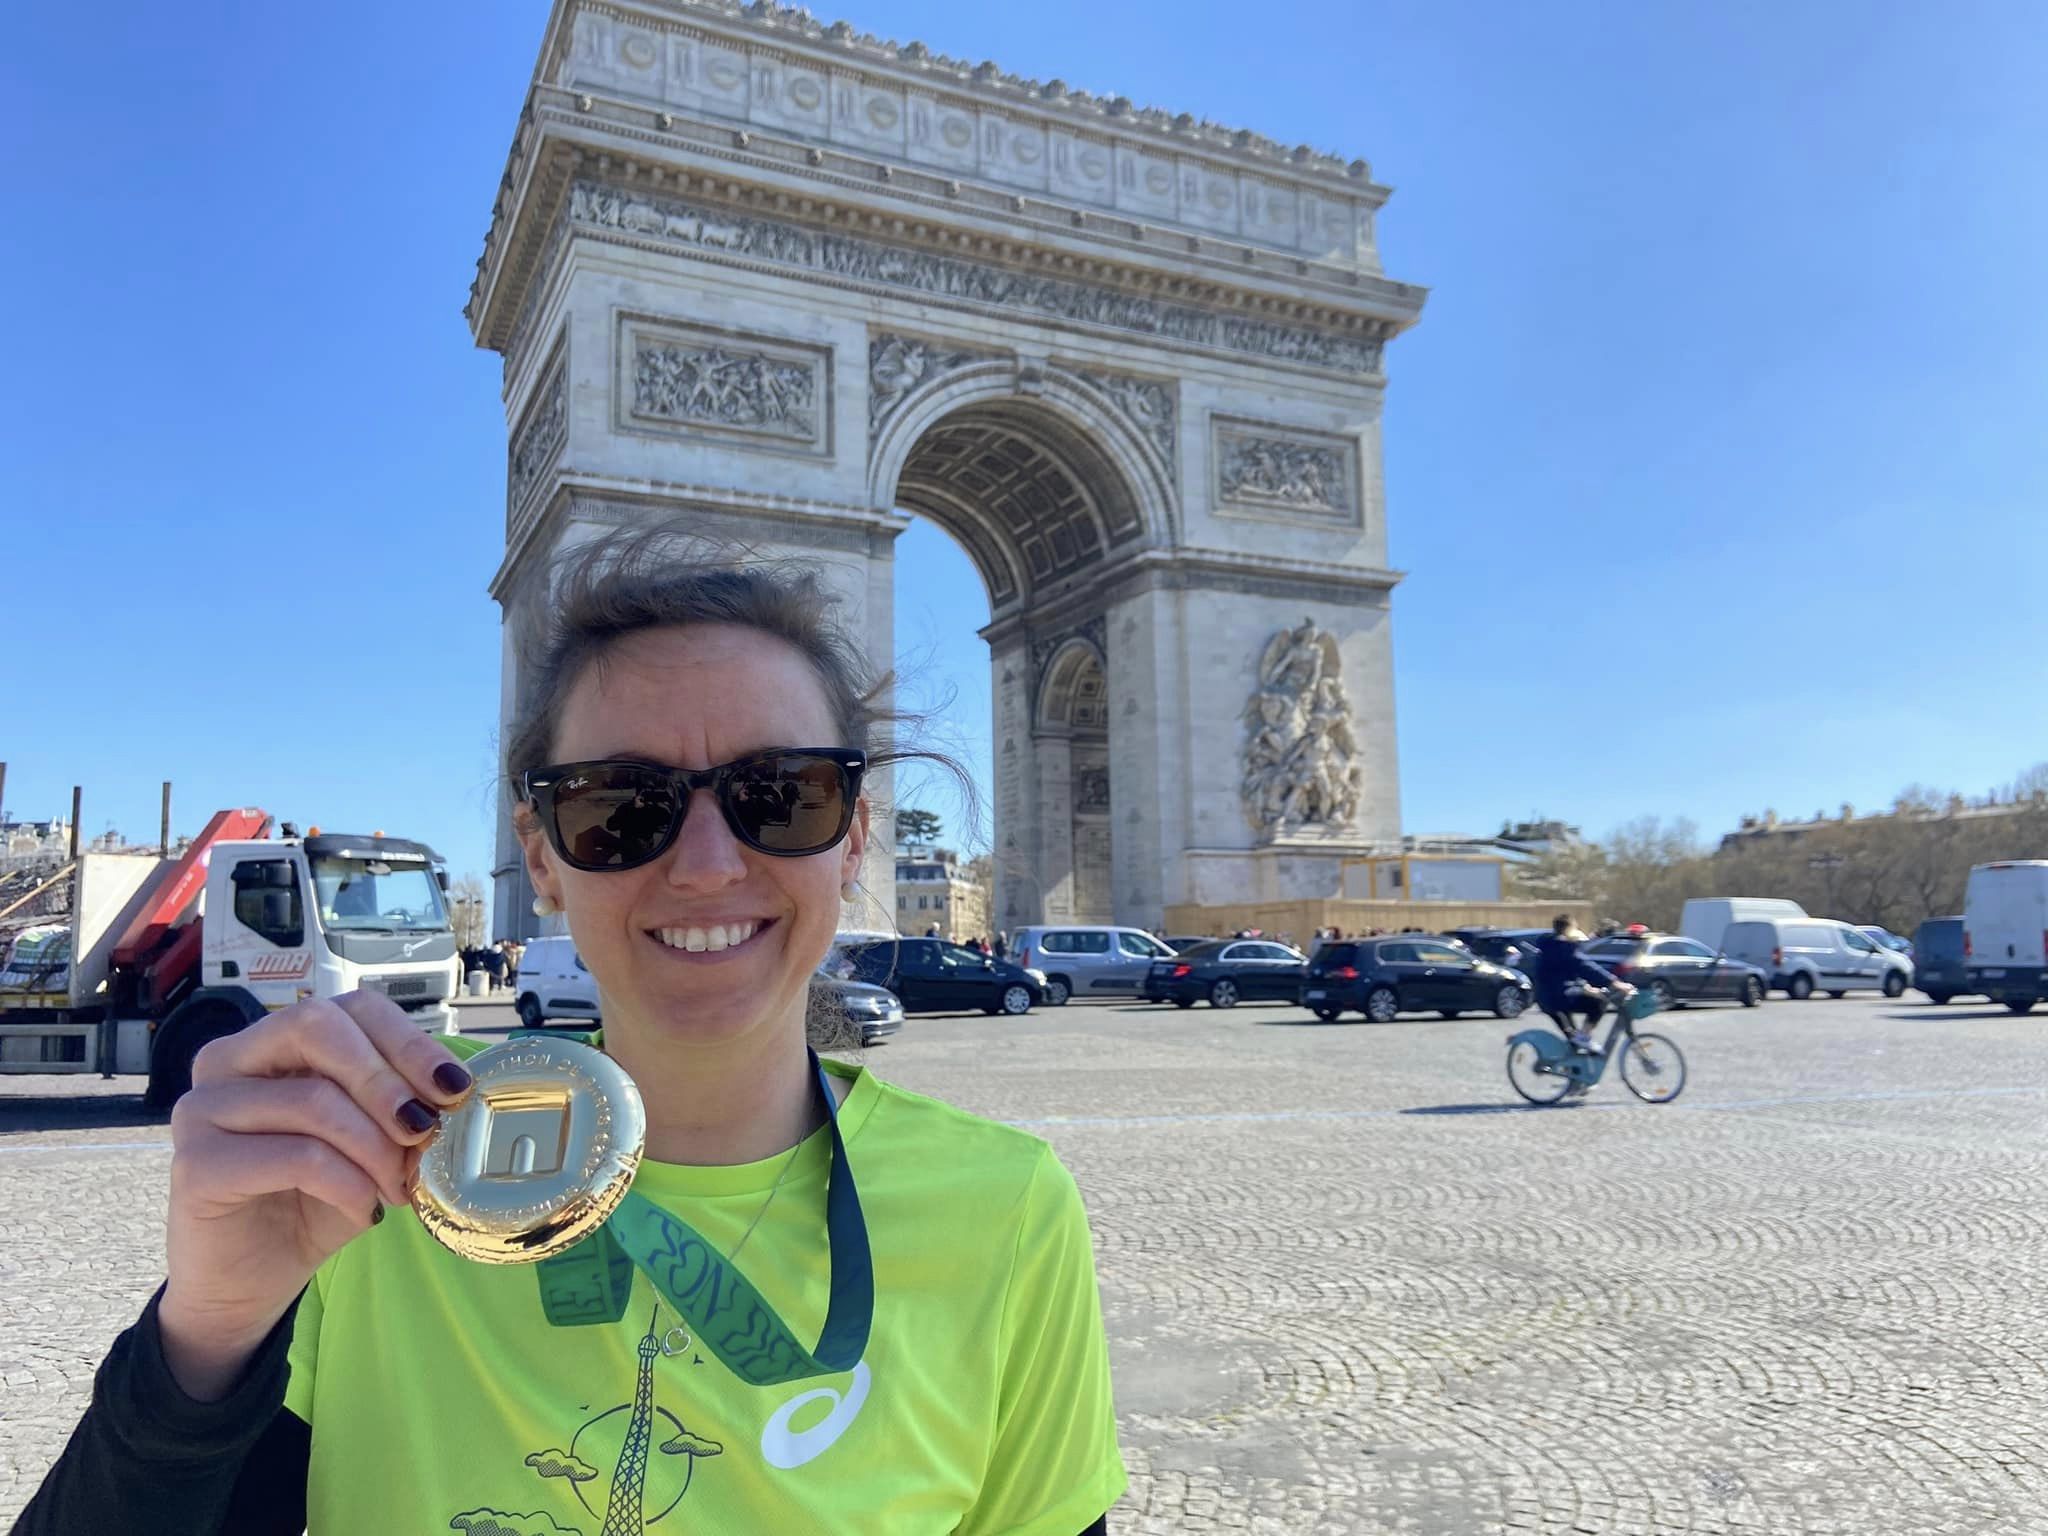 OOH LA LA! Yasmin Runs The Paris Marathon